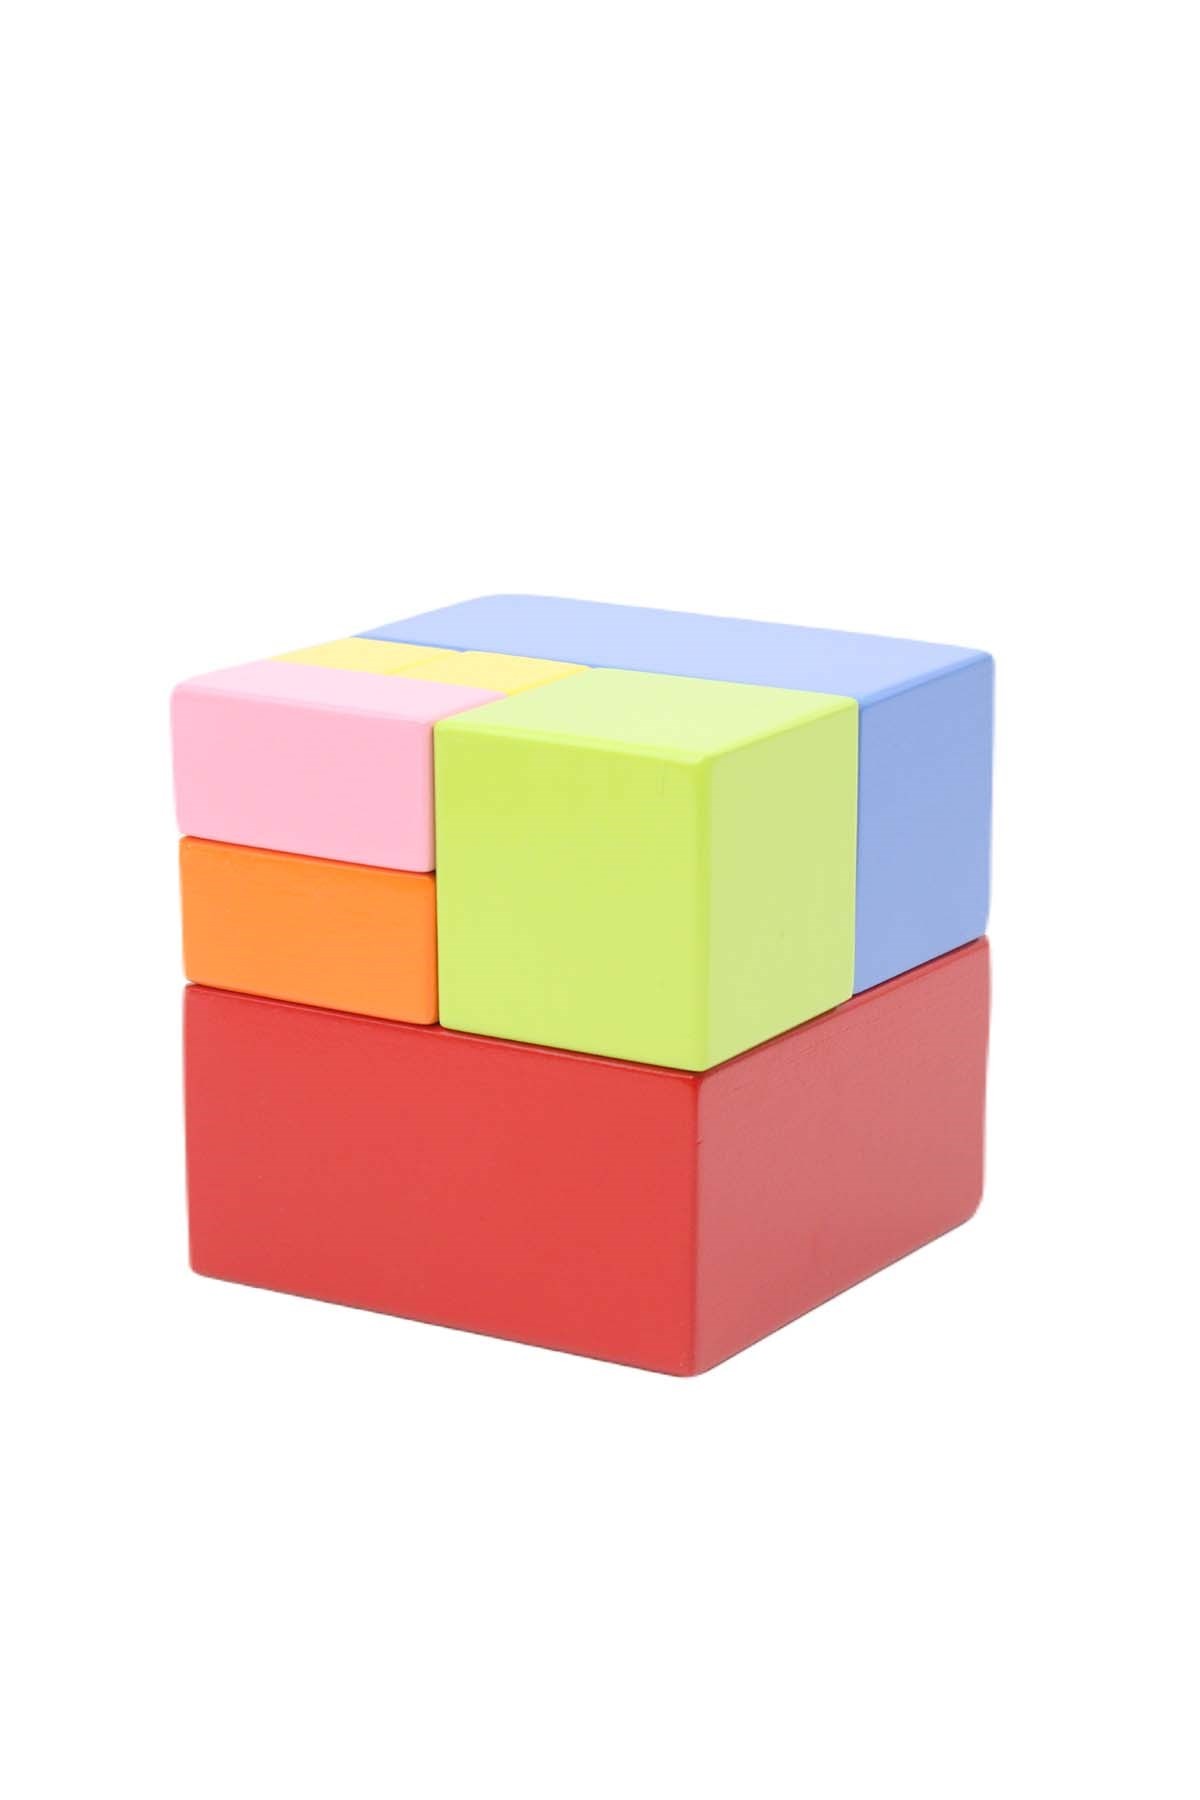 Cube entier en une seule pièce